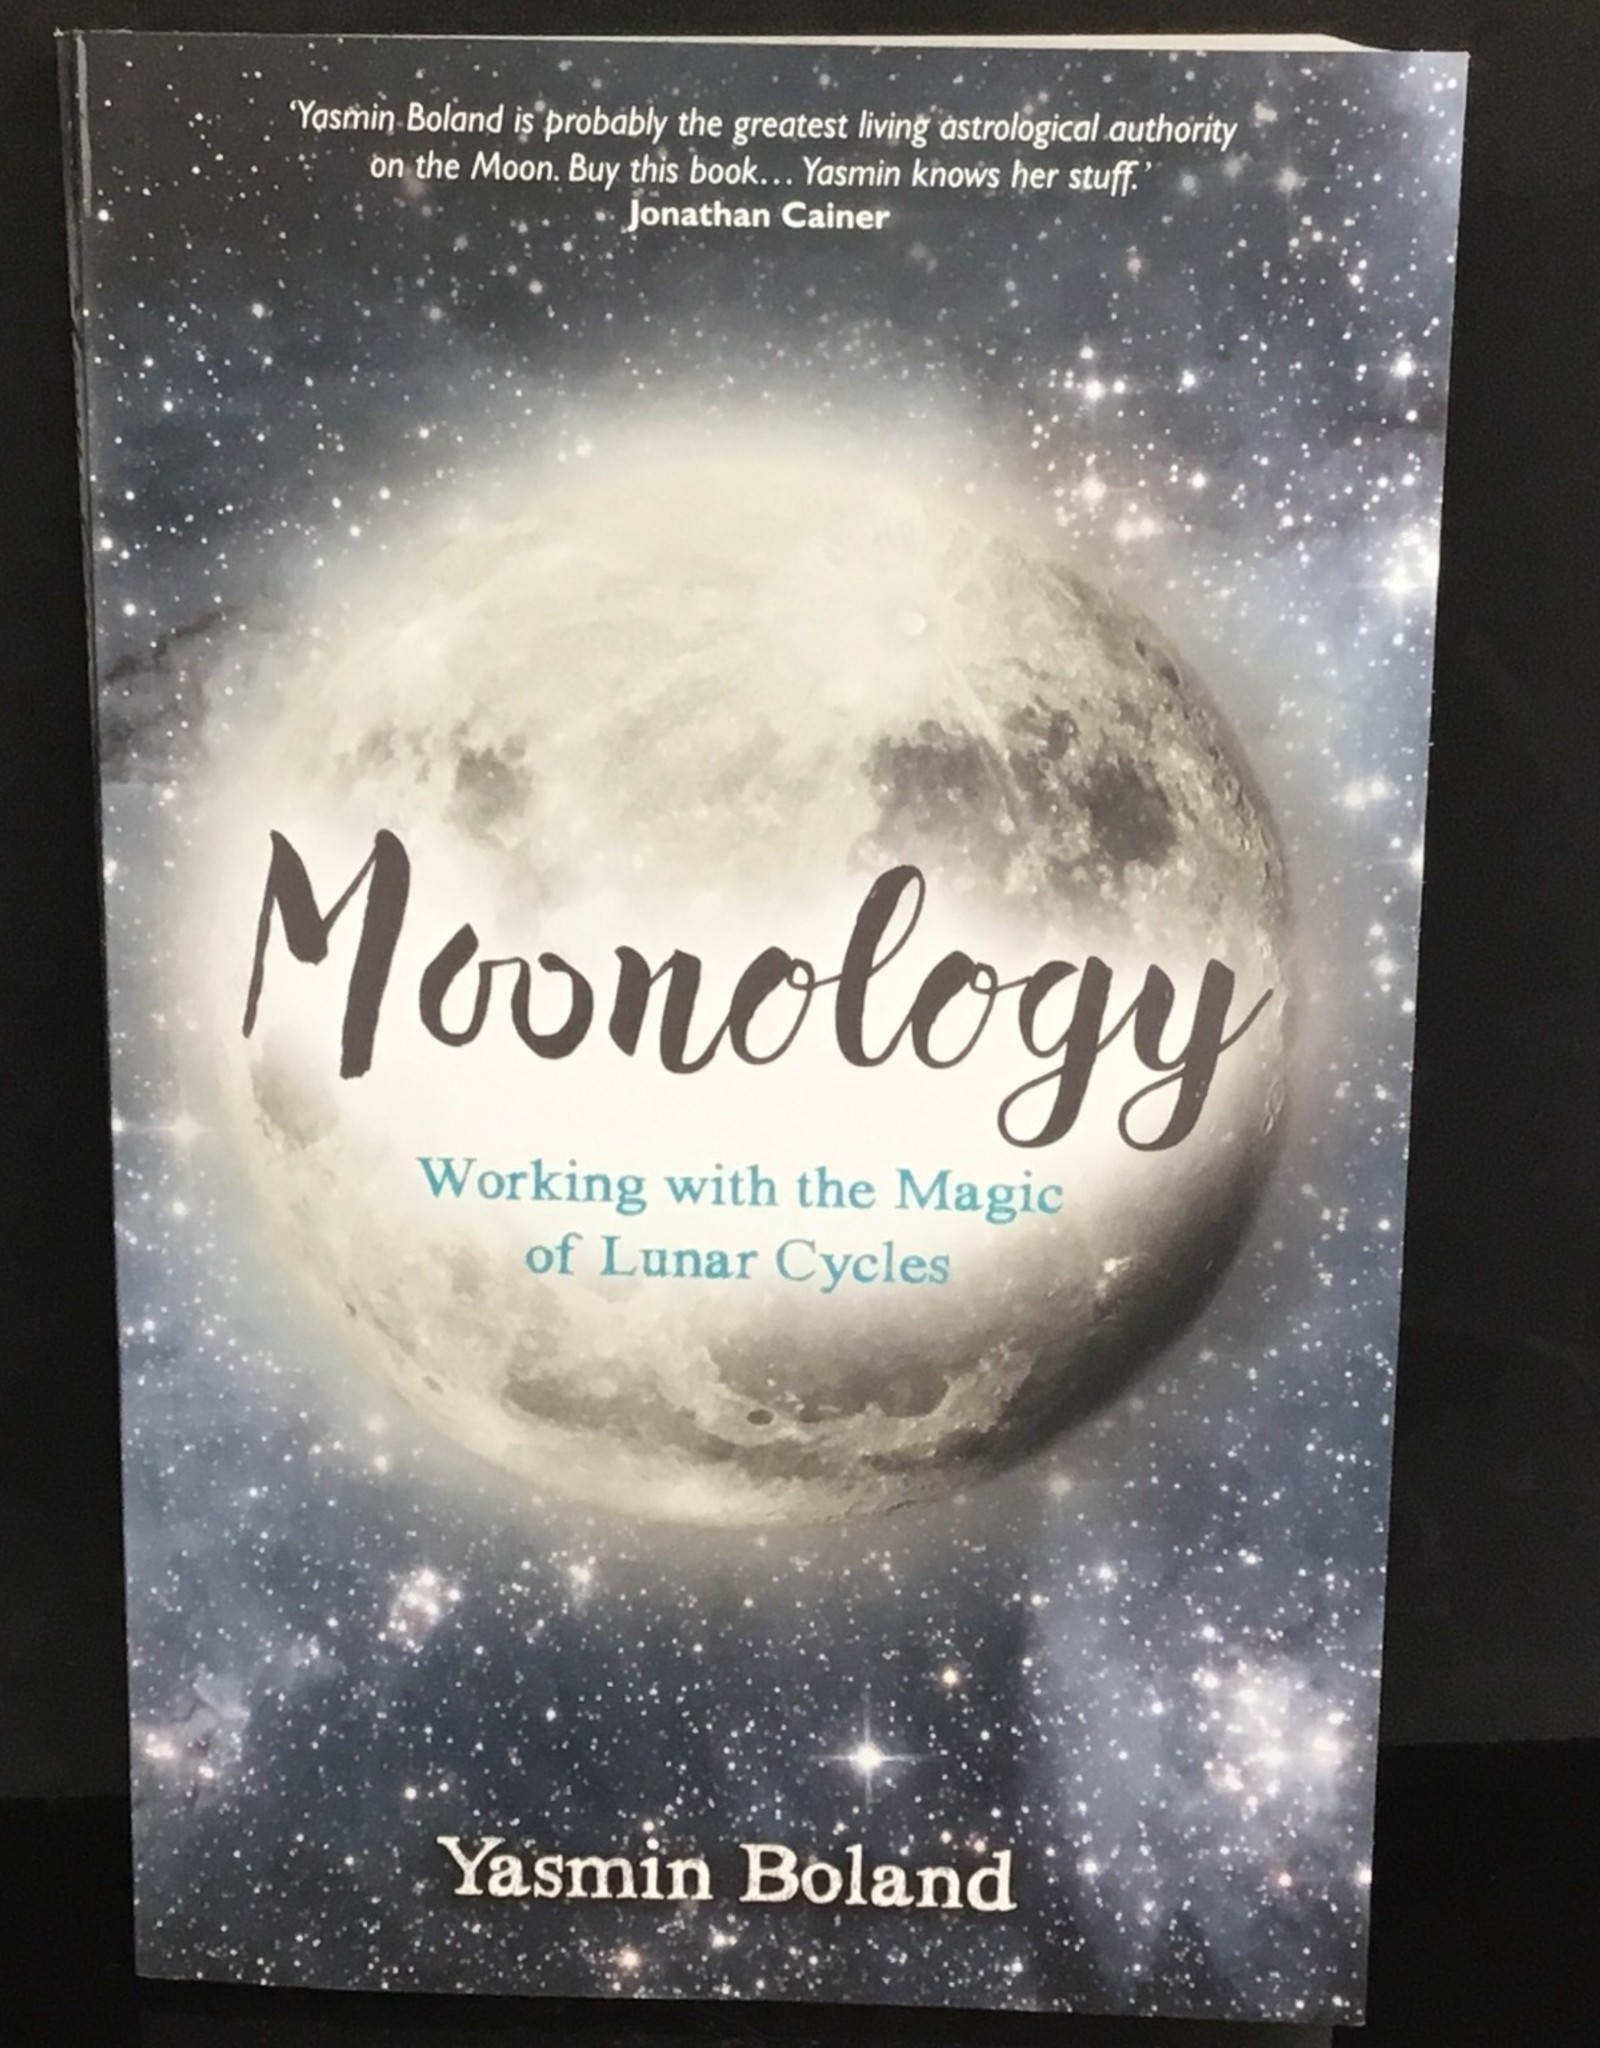 Moonology